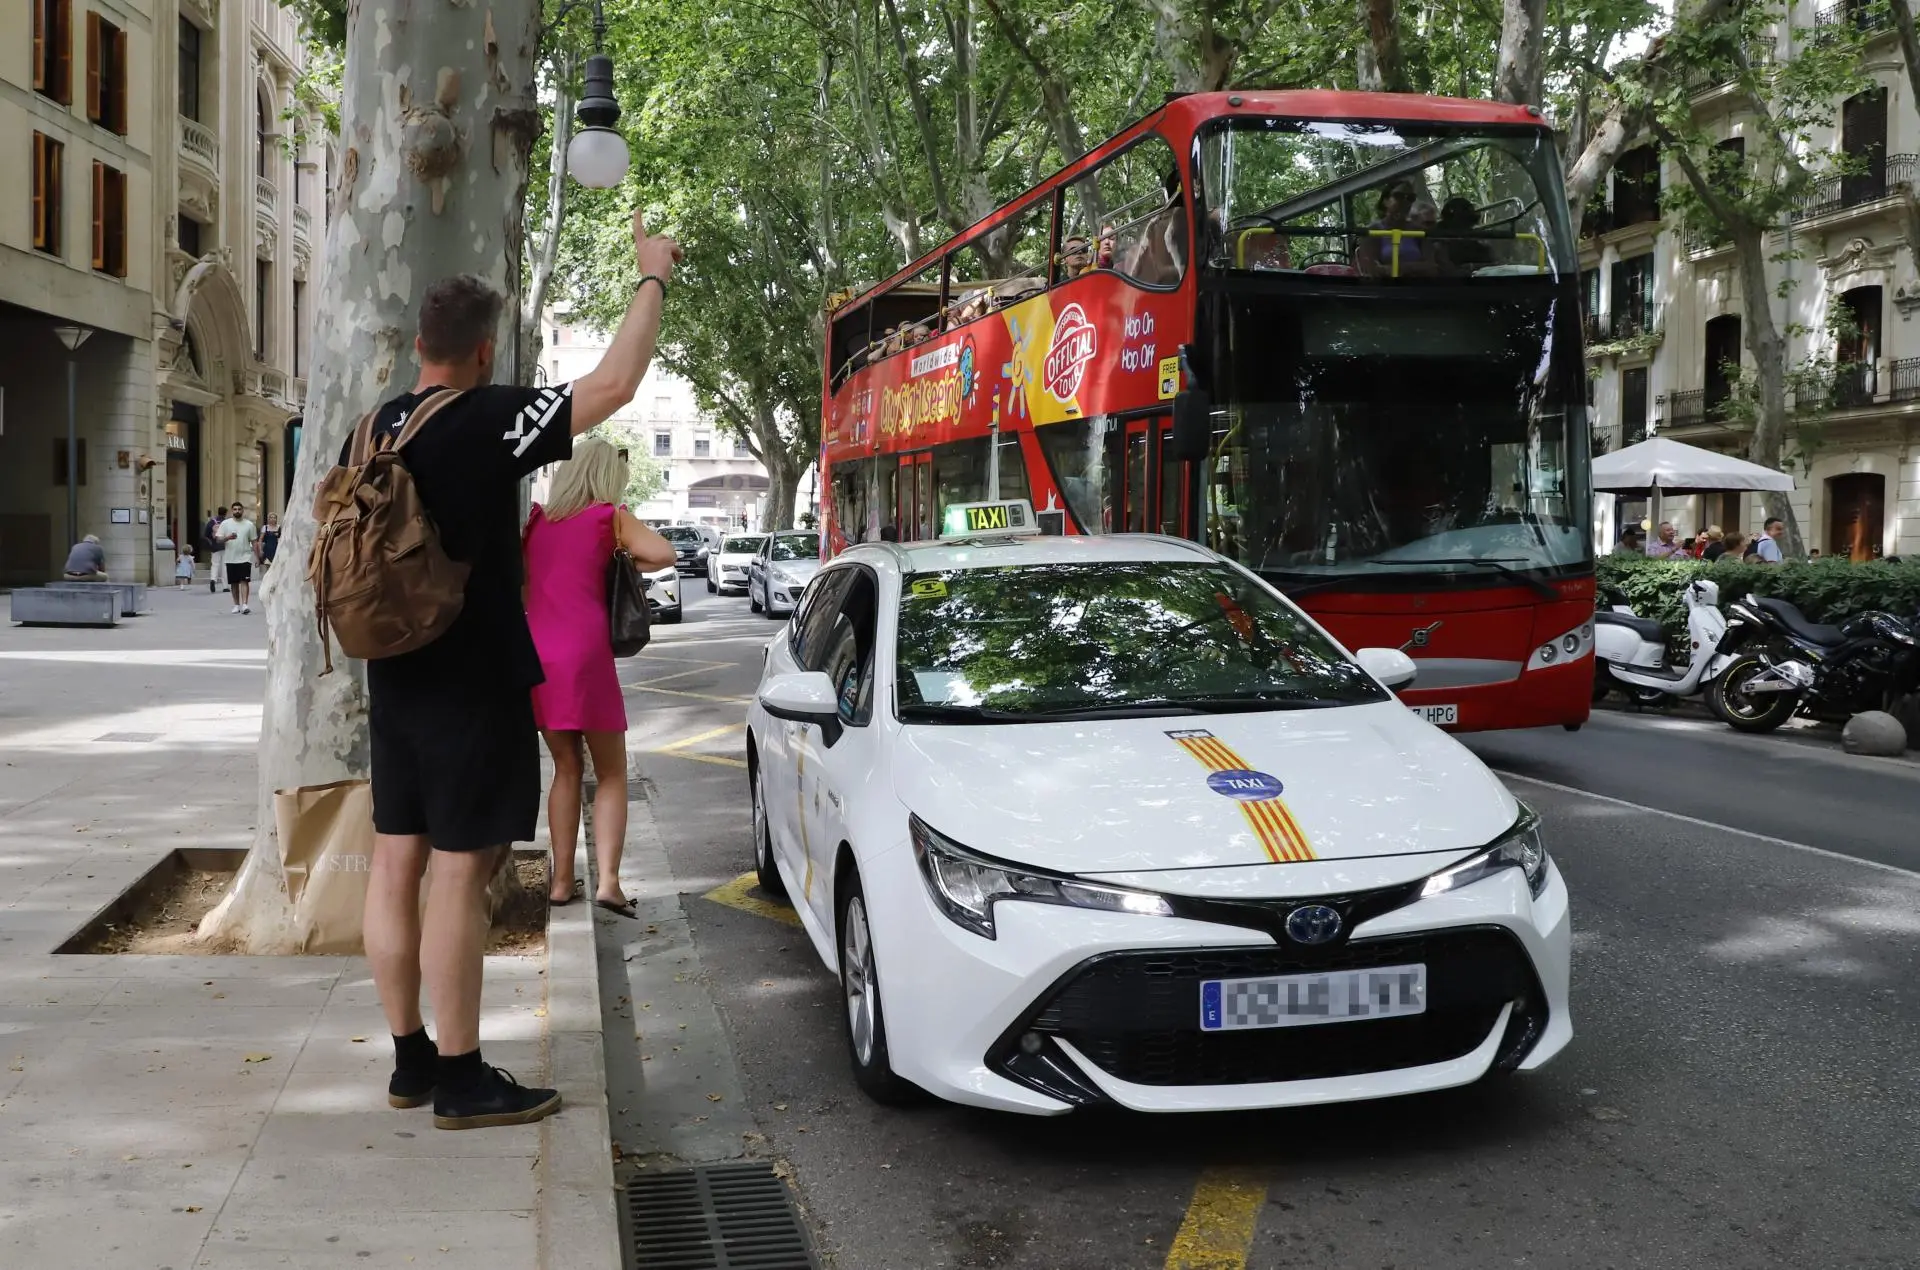 pedir un taxi en palma - Cómo reservar un taxi en Palma de Mallorca